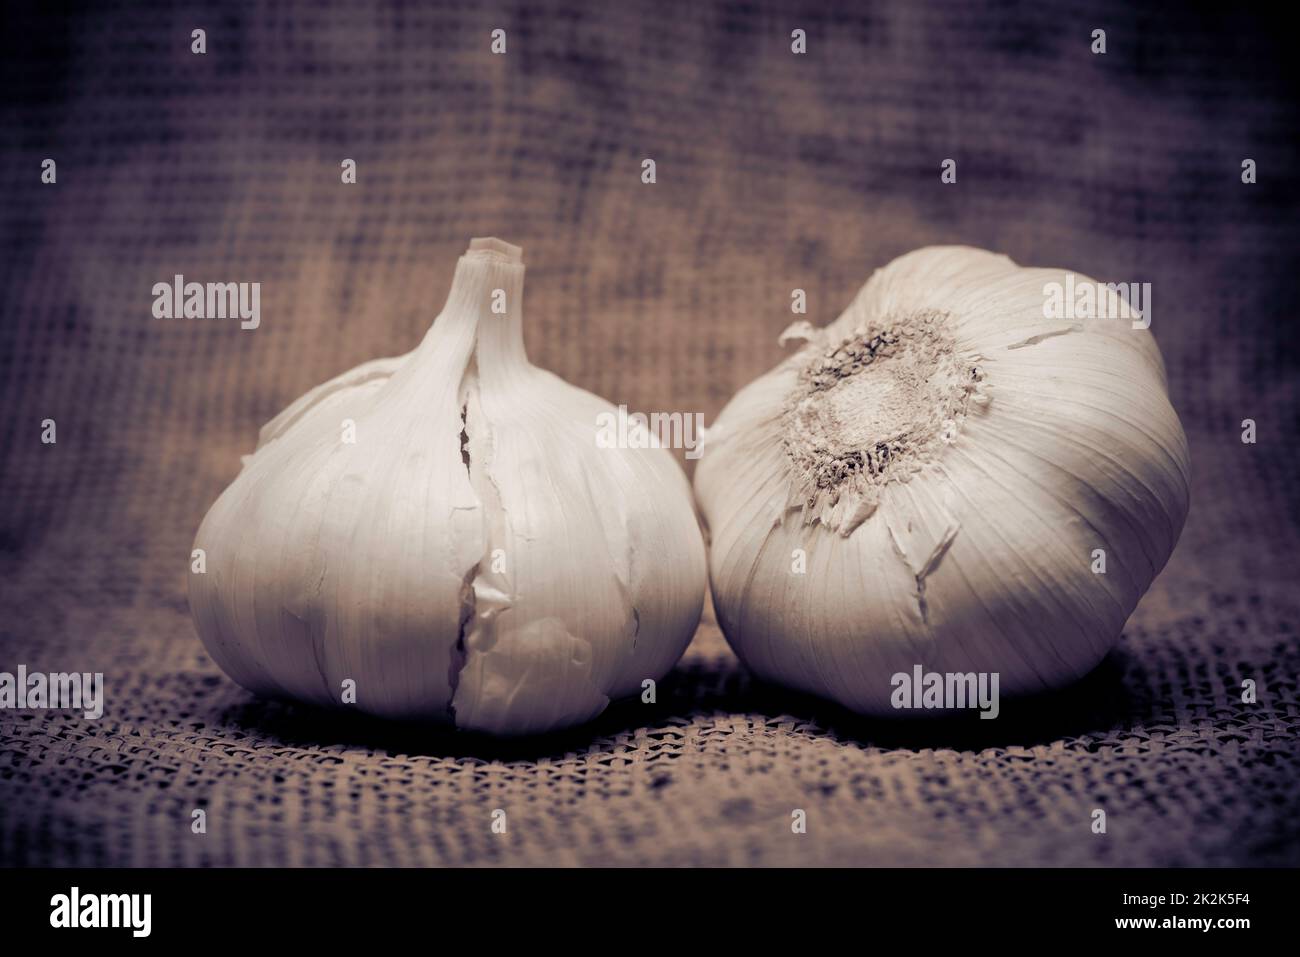 Primo piano all'aglio. Foto con tonalità di colore sintonizzata Foto Stock